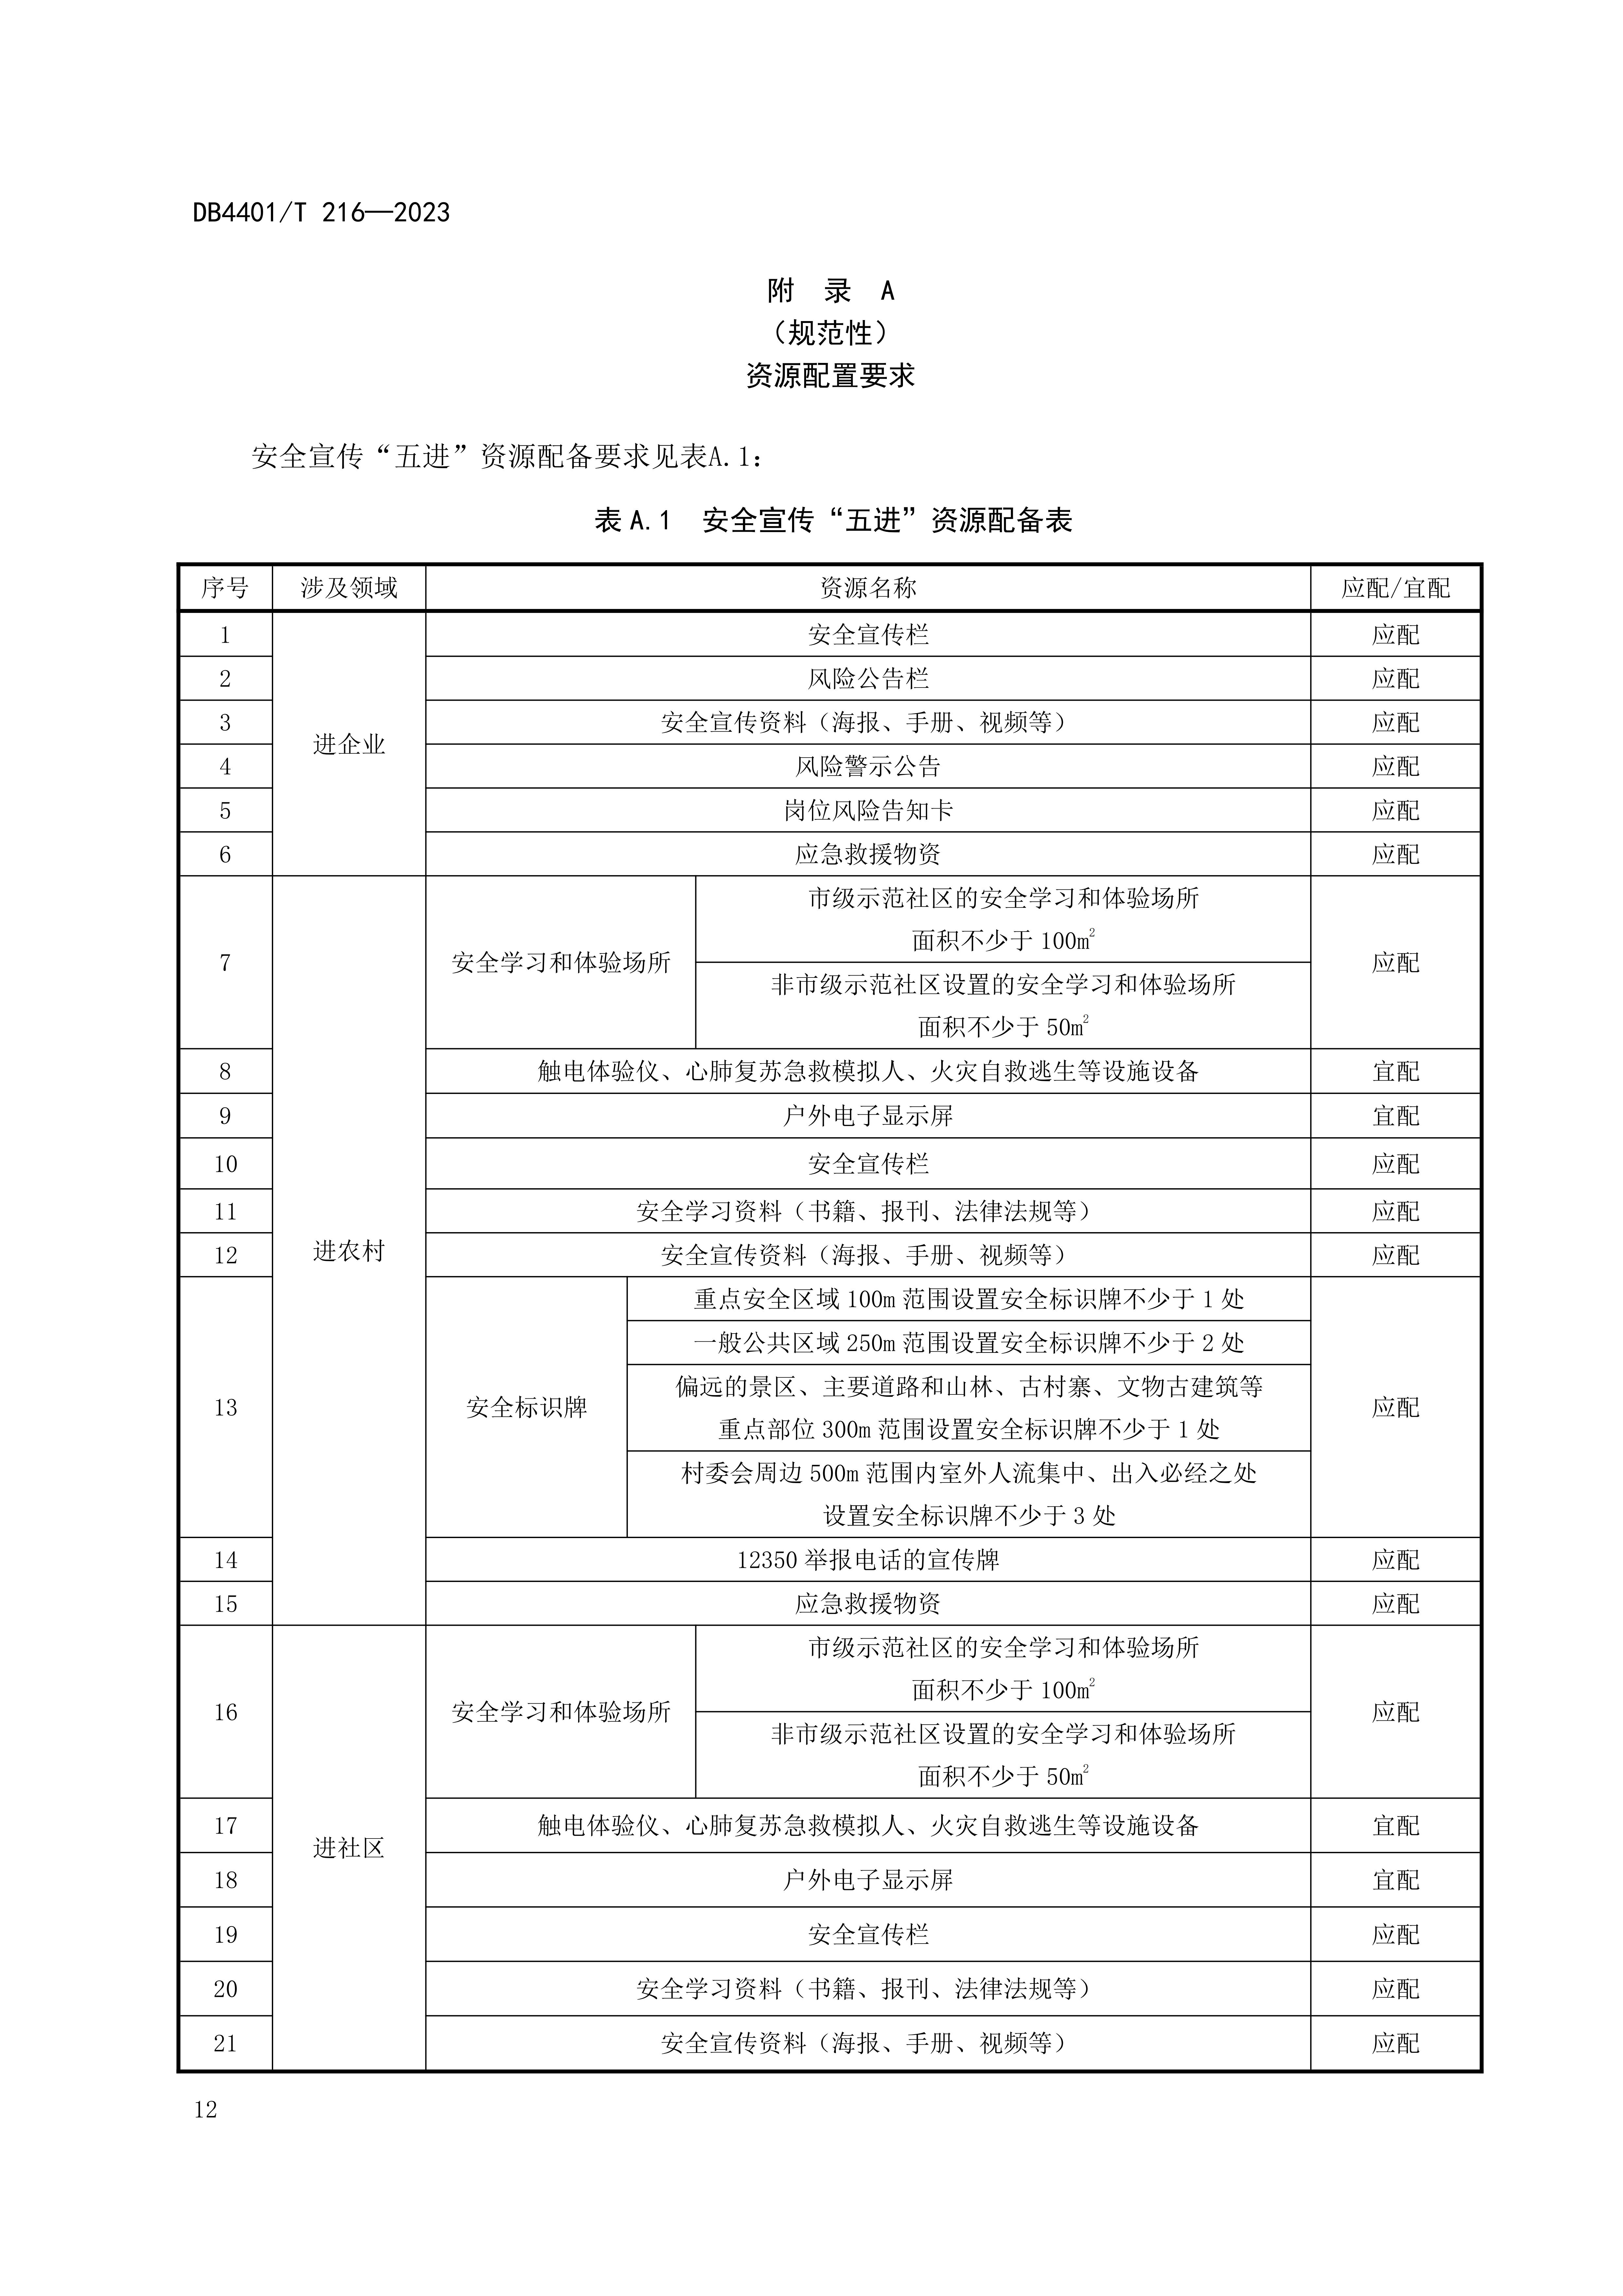 (终稿 发布稿)广州市地方标准《安全宣传“五进”工作规范》20230625_17.jpg